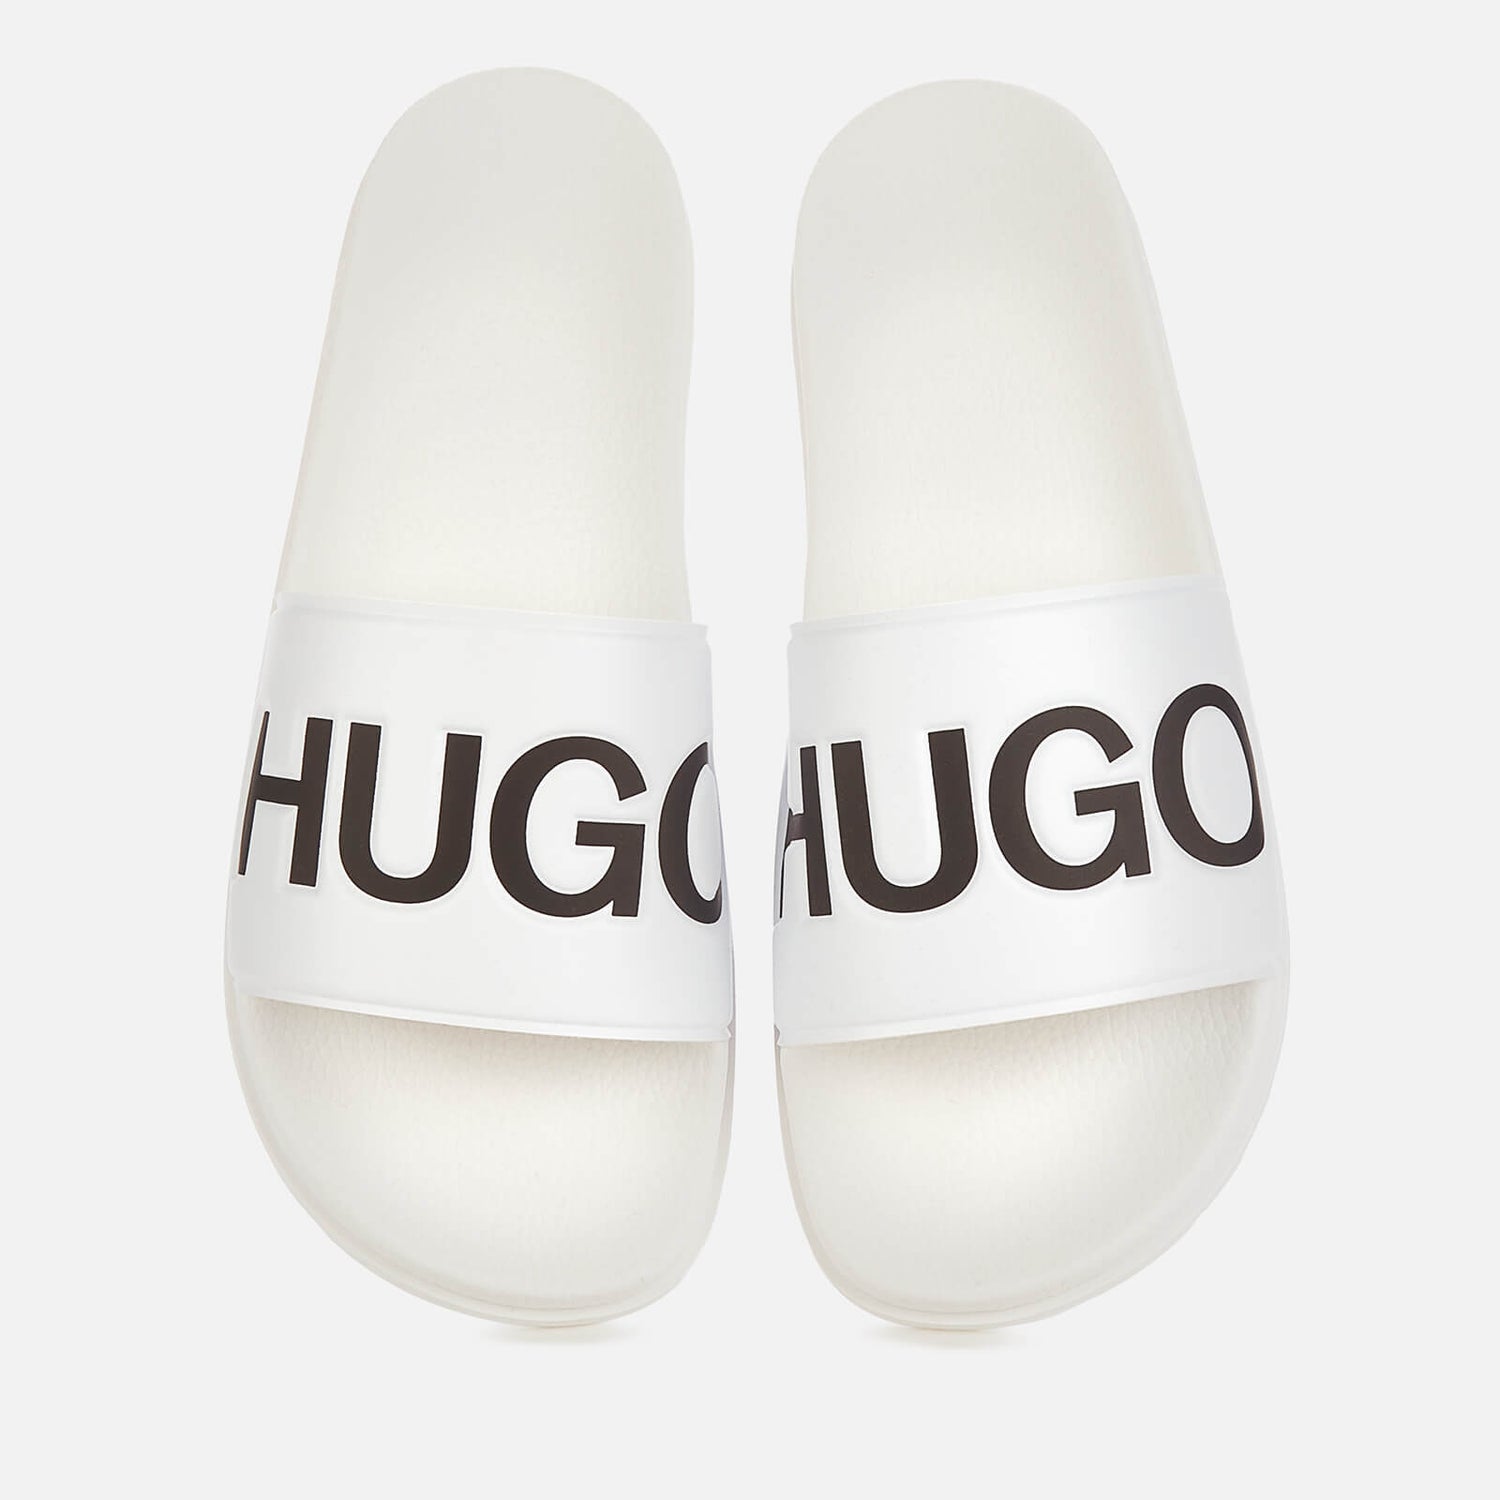 HUGO Men's Match Slide Sandals - Open White